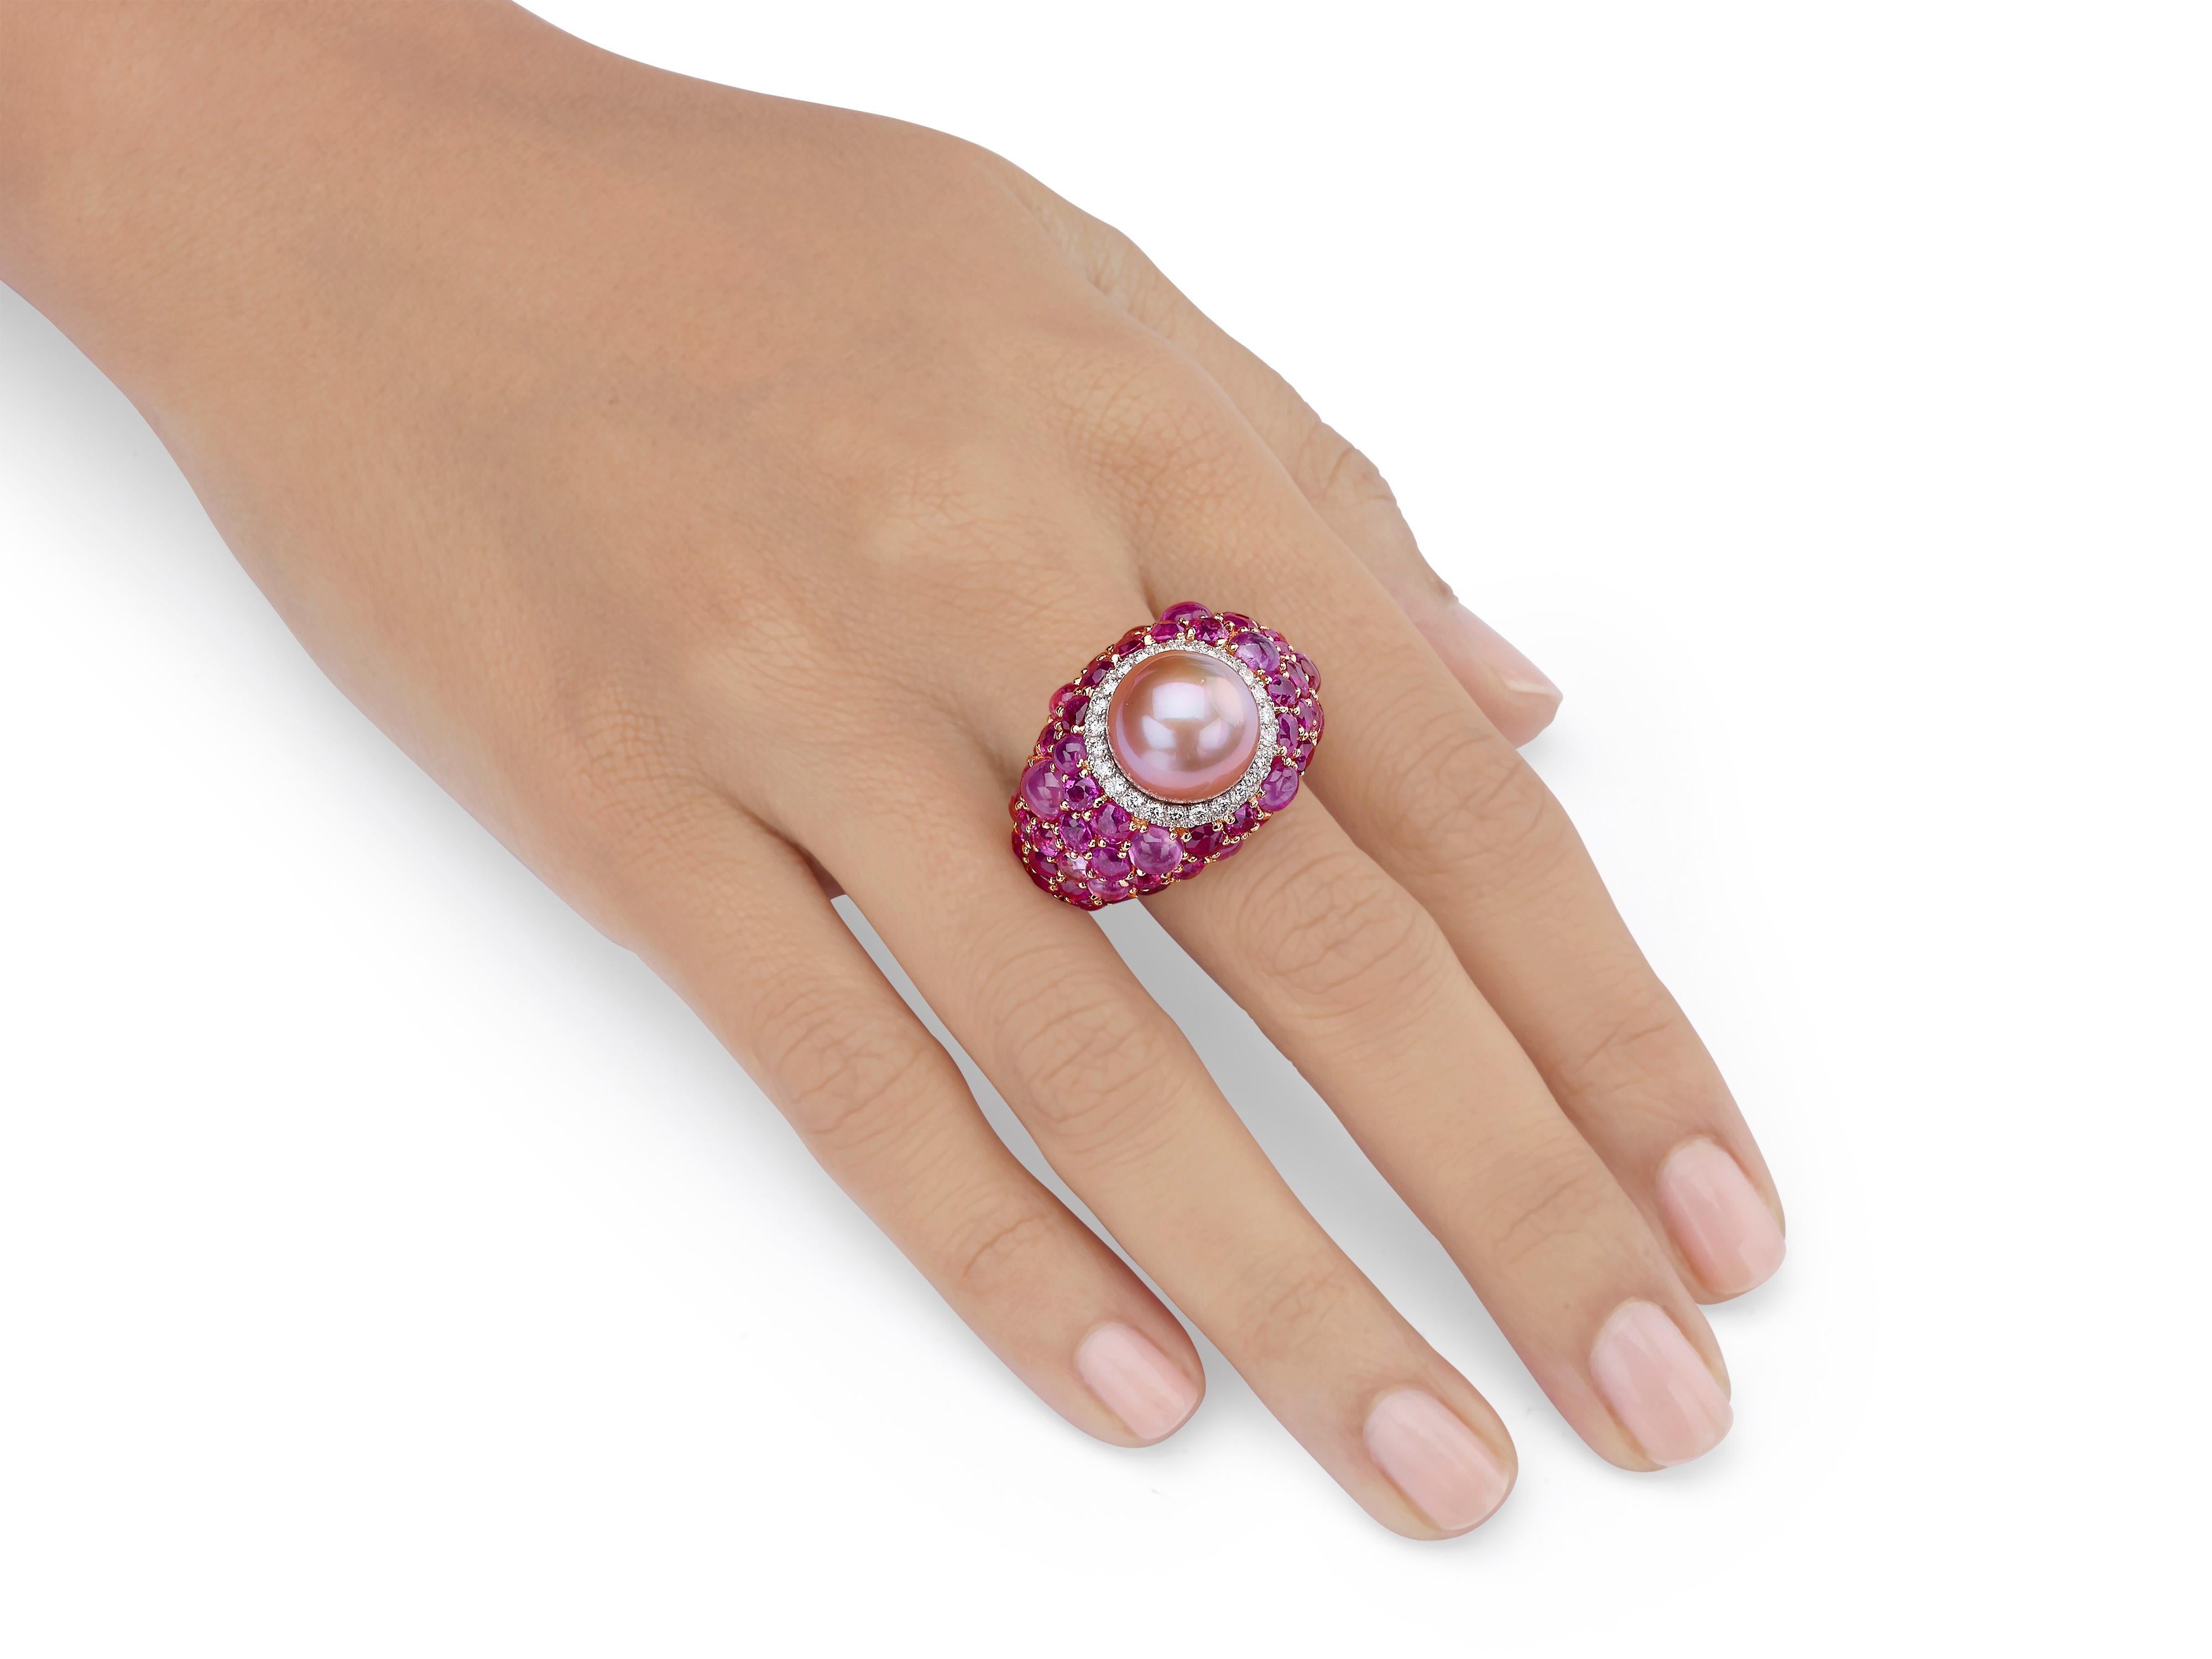 24 carat diamond engagement ring price